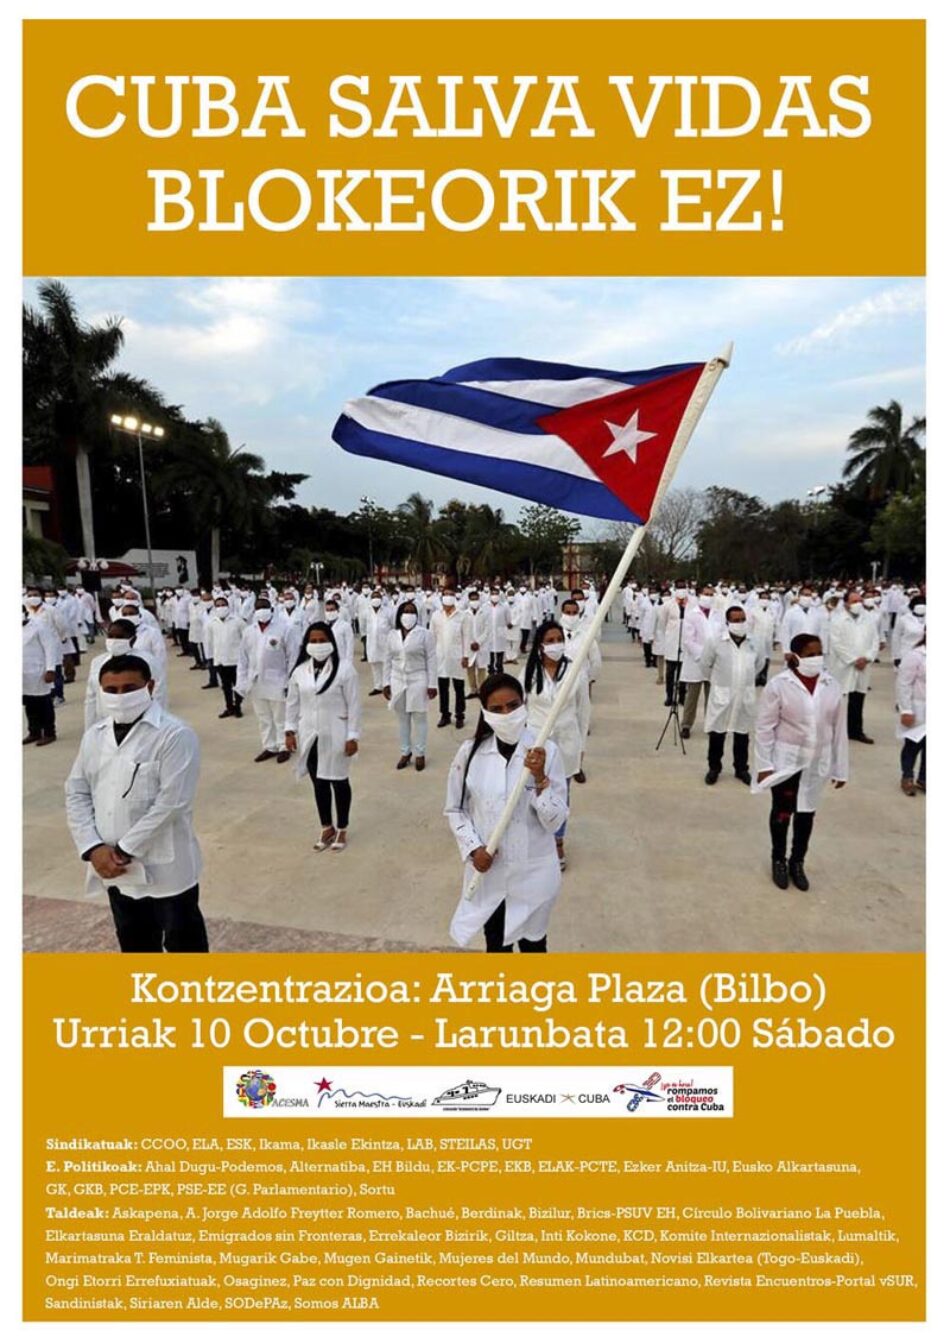 Concentración contra el bloqueo a Cuba unirá a emigración cubana, sindicatos, partidos y colectivos vascos: Bilbao, 10 de Octubre